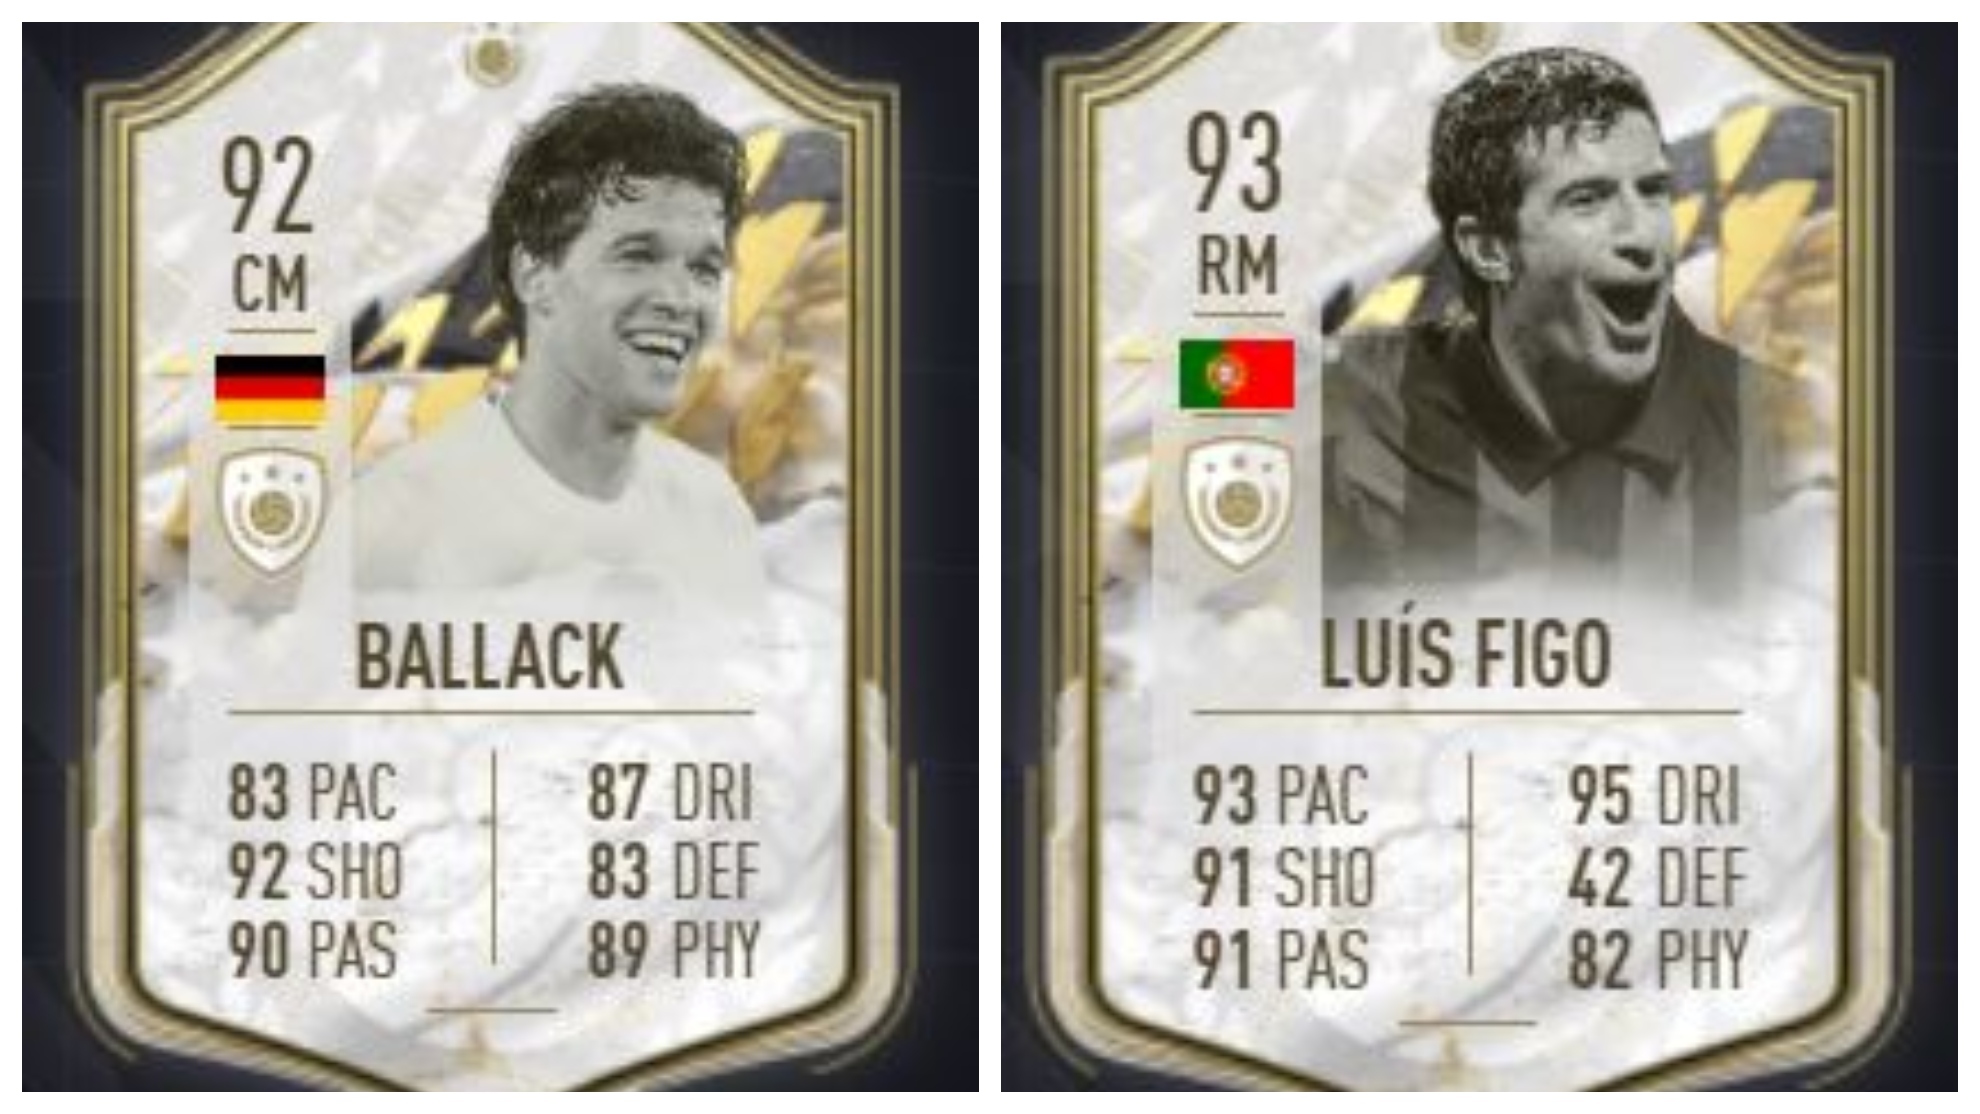 Las cartas Moments de Ballack y Figo en FIFA 22